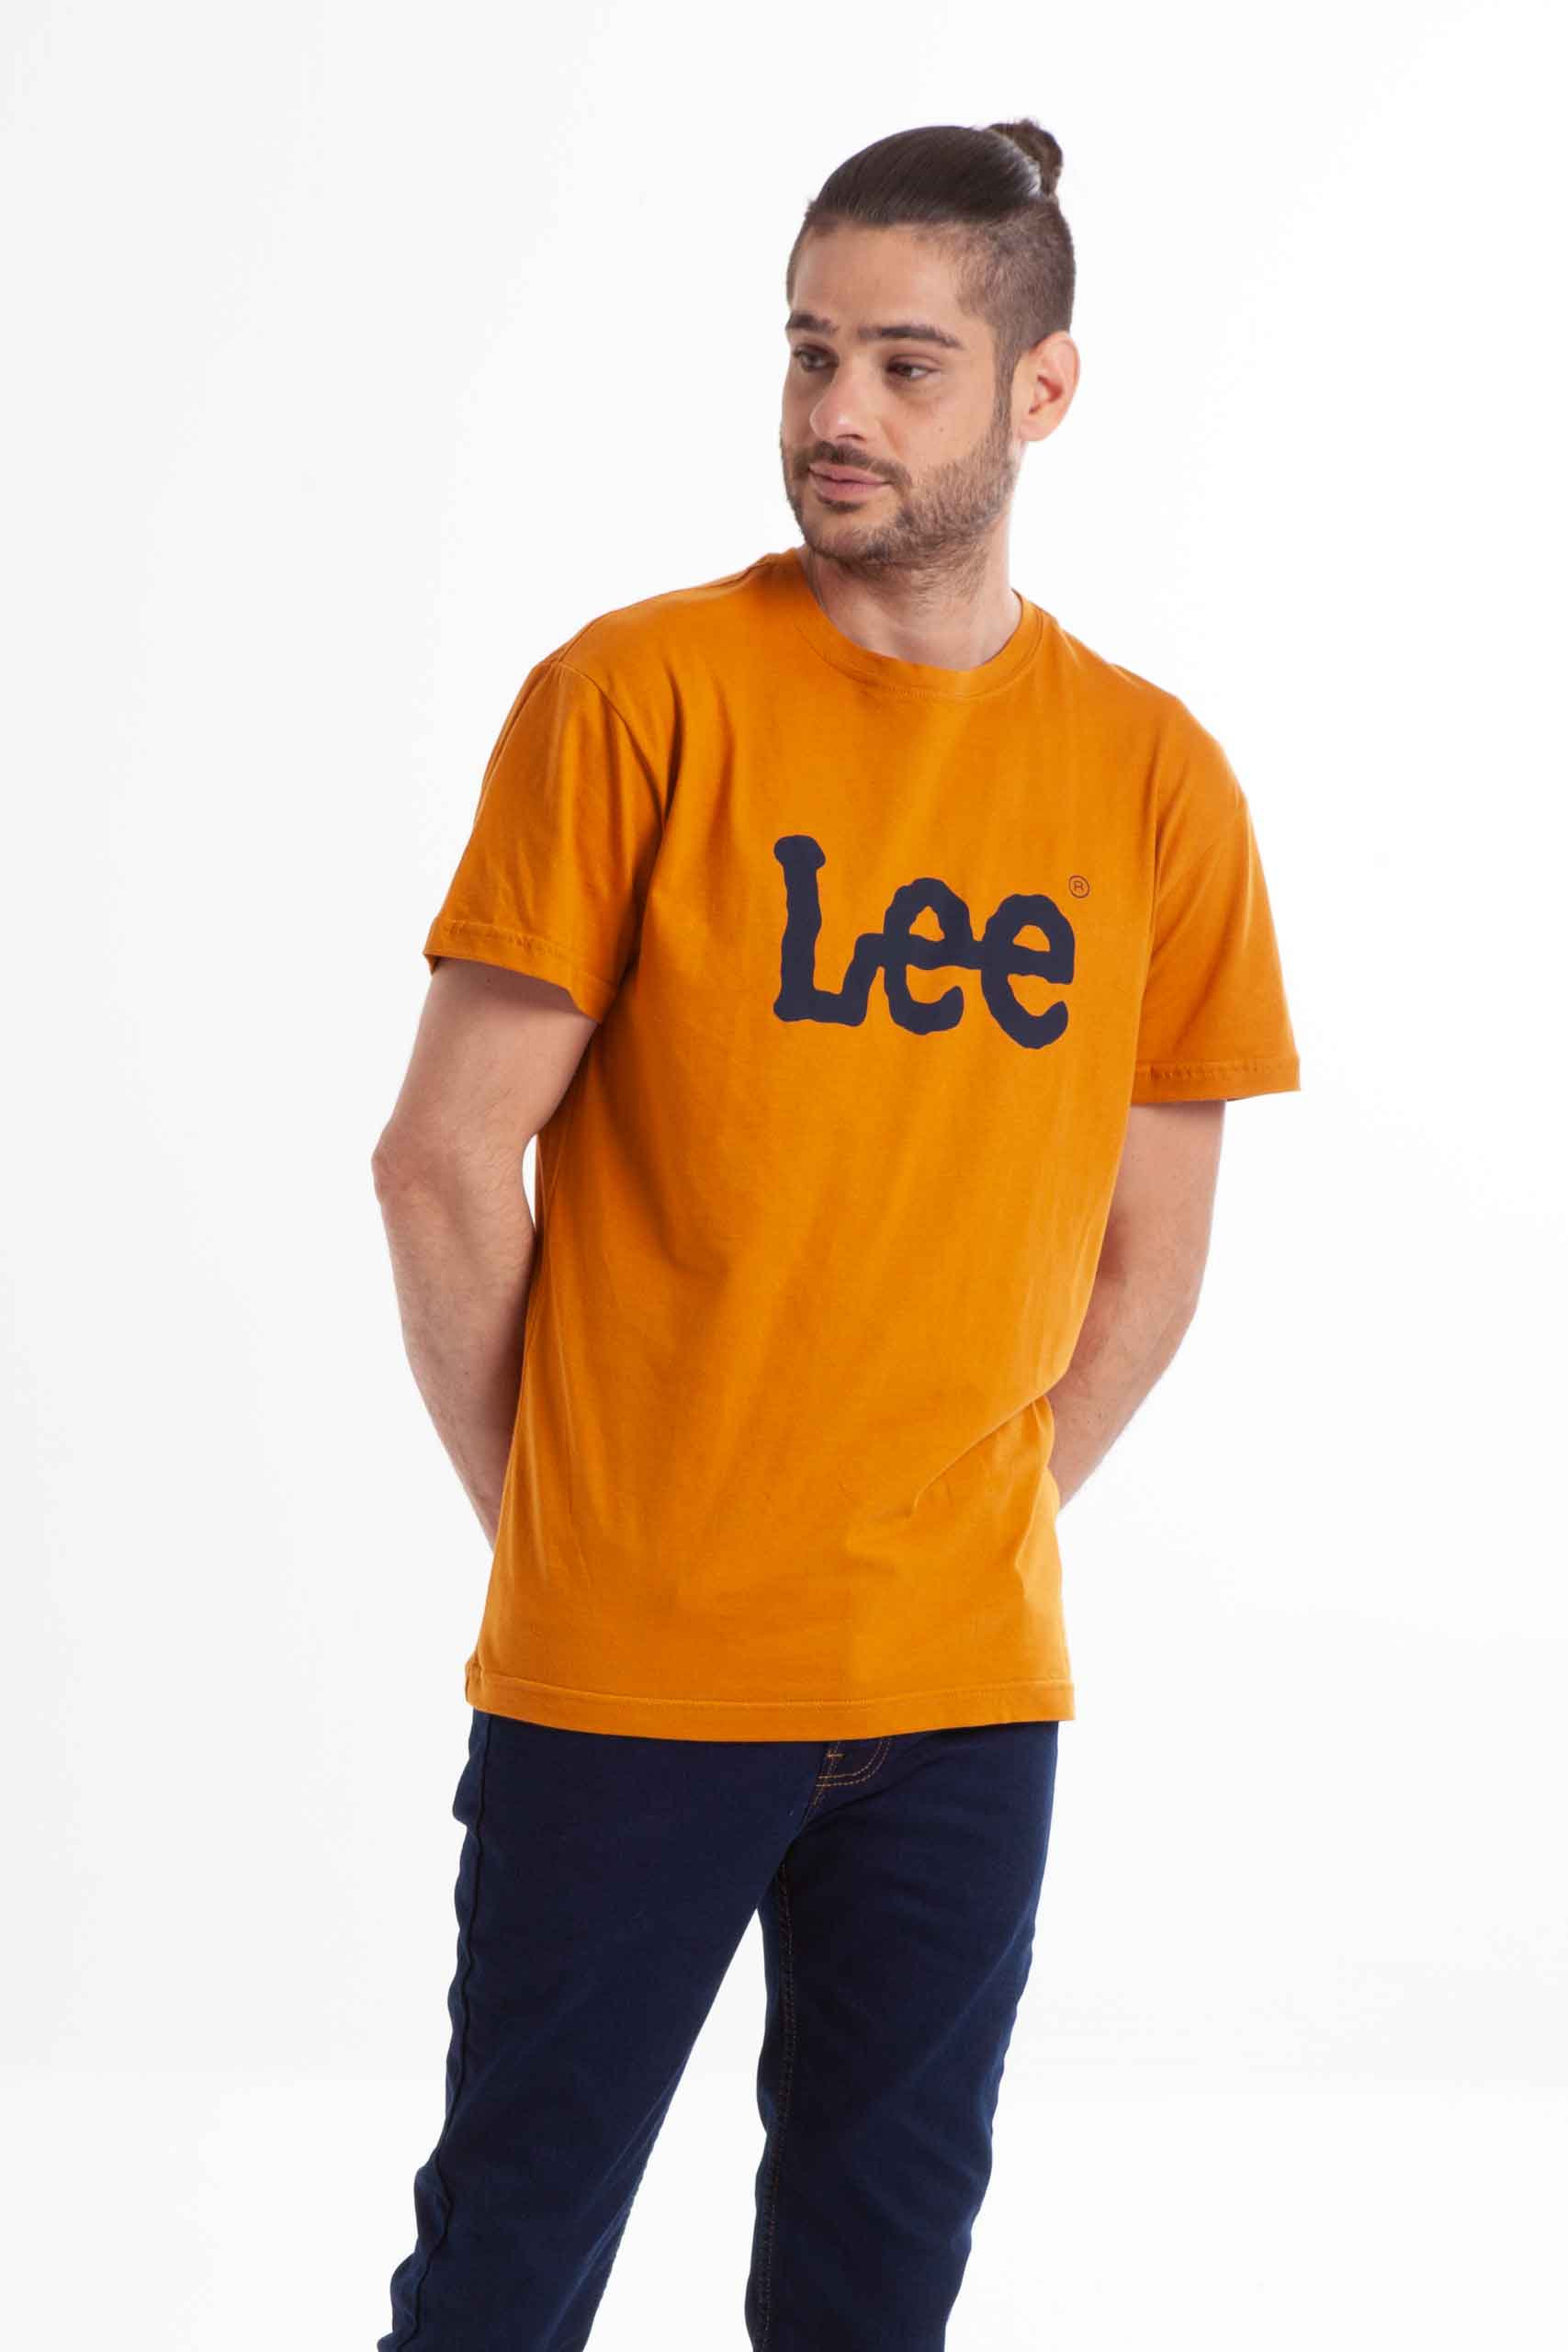 Vista frontal de camiseta de color mostaza con logo de la marca lee